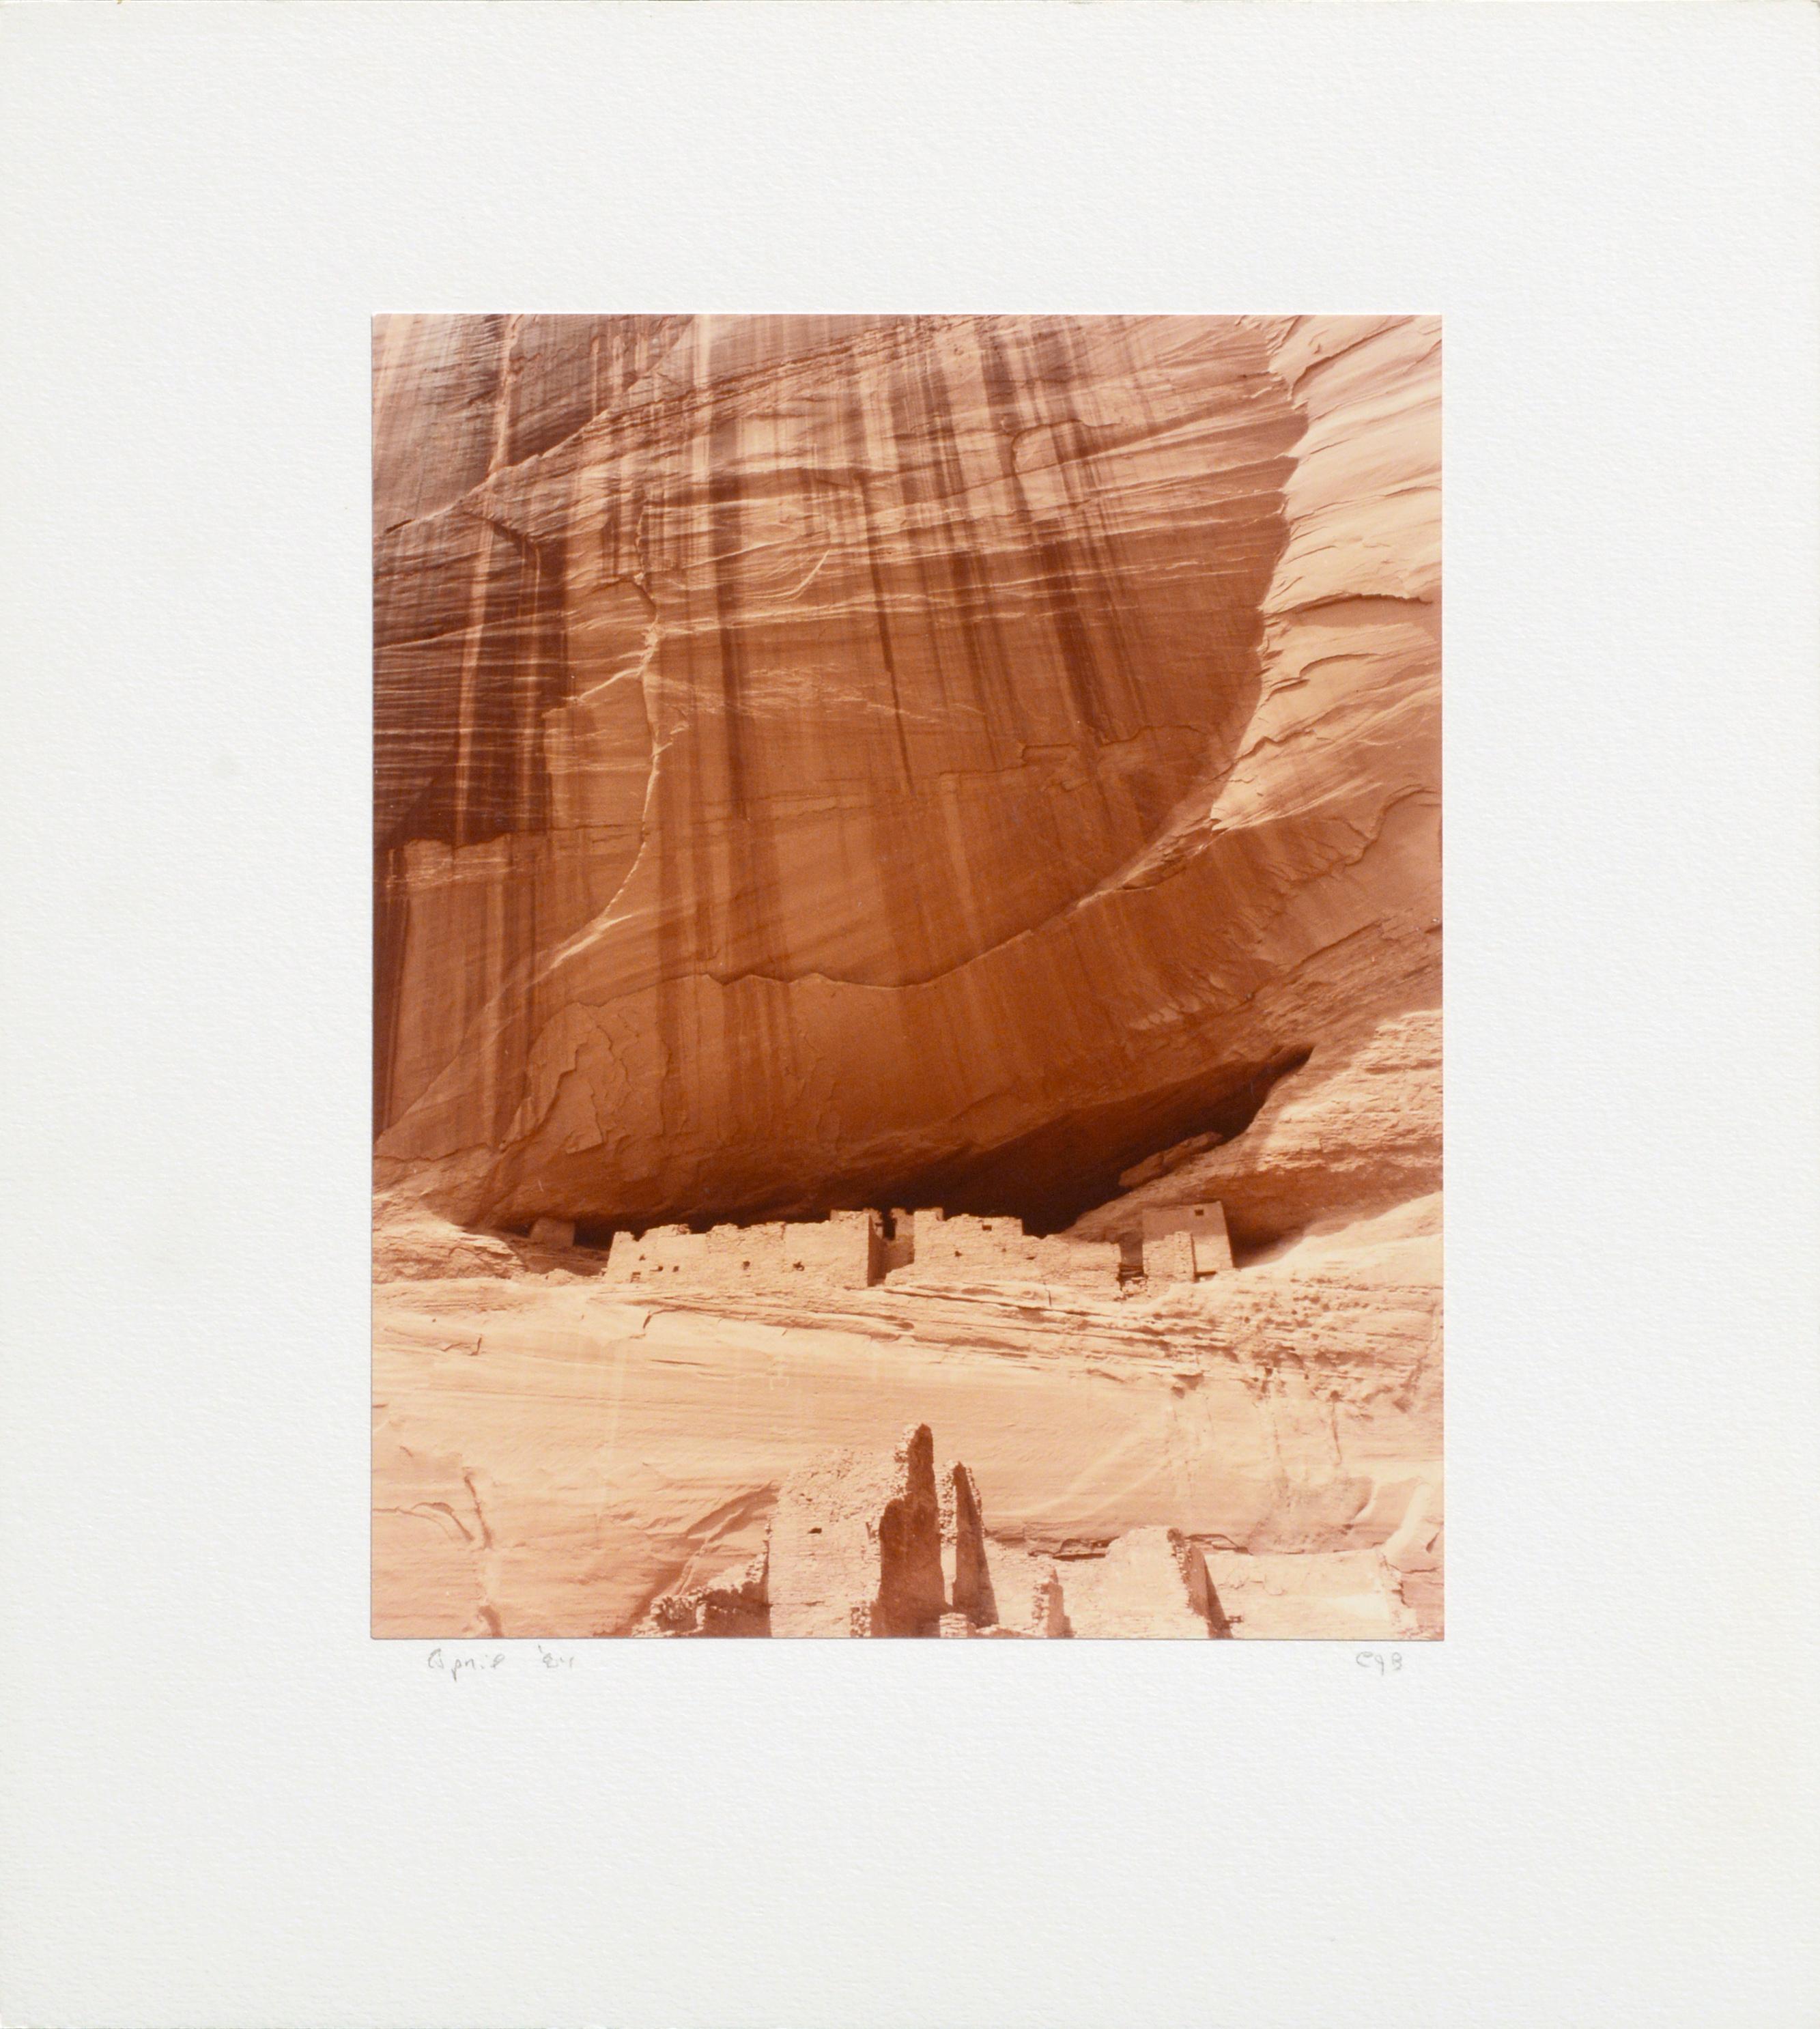 "Whitehouse Ruins - Canyon de Chelle" - Desert Landscape Photograph